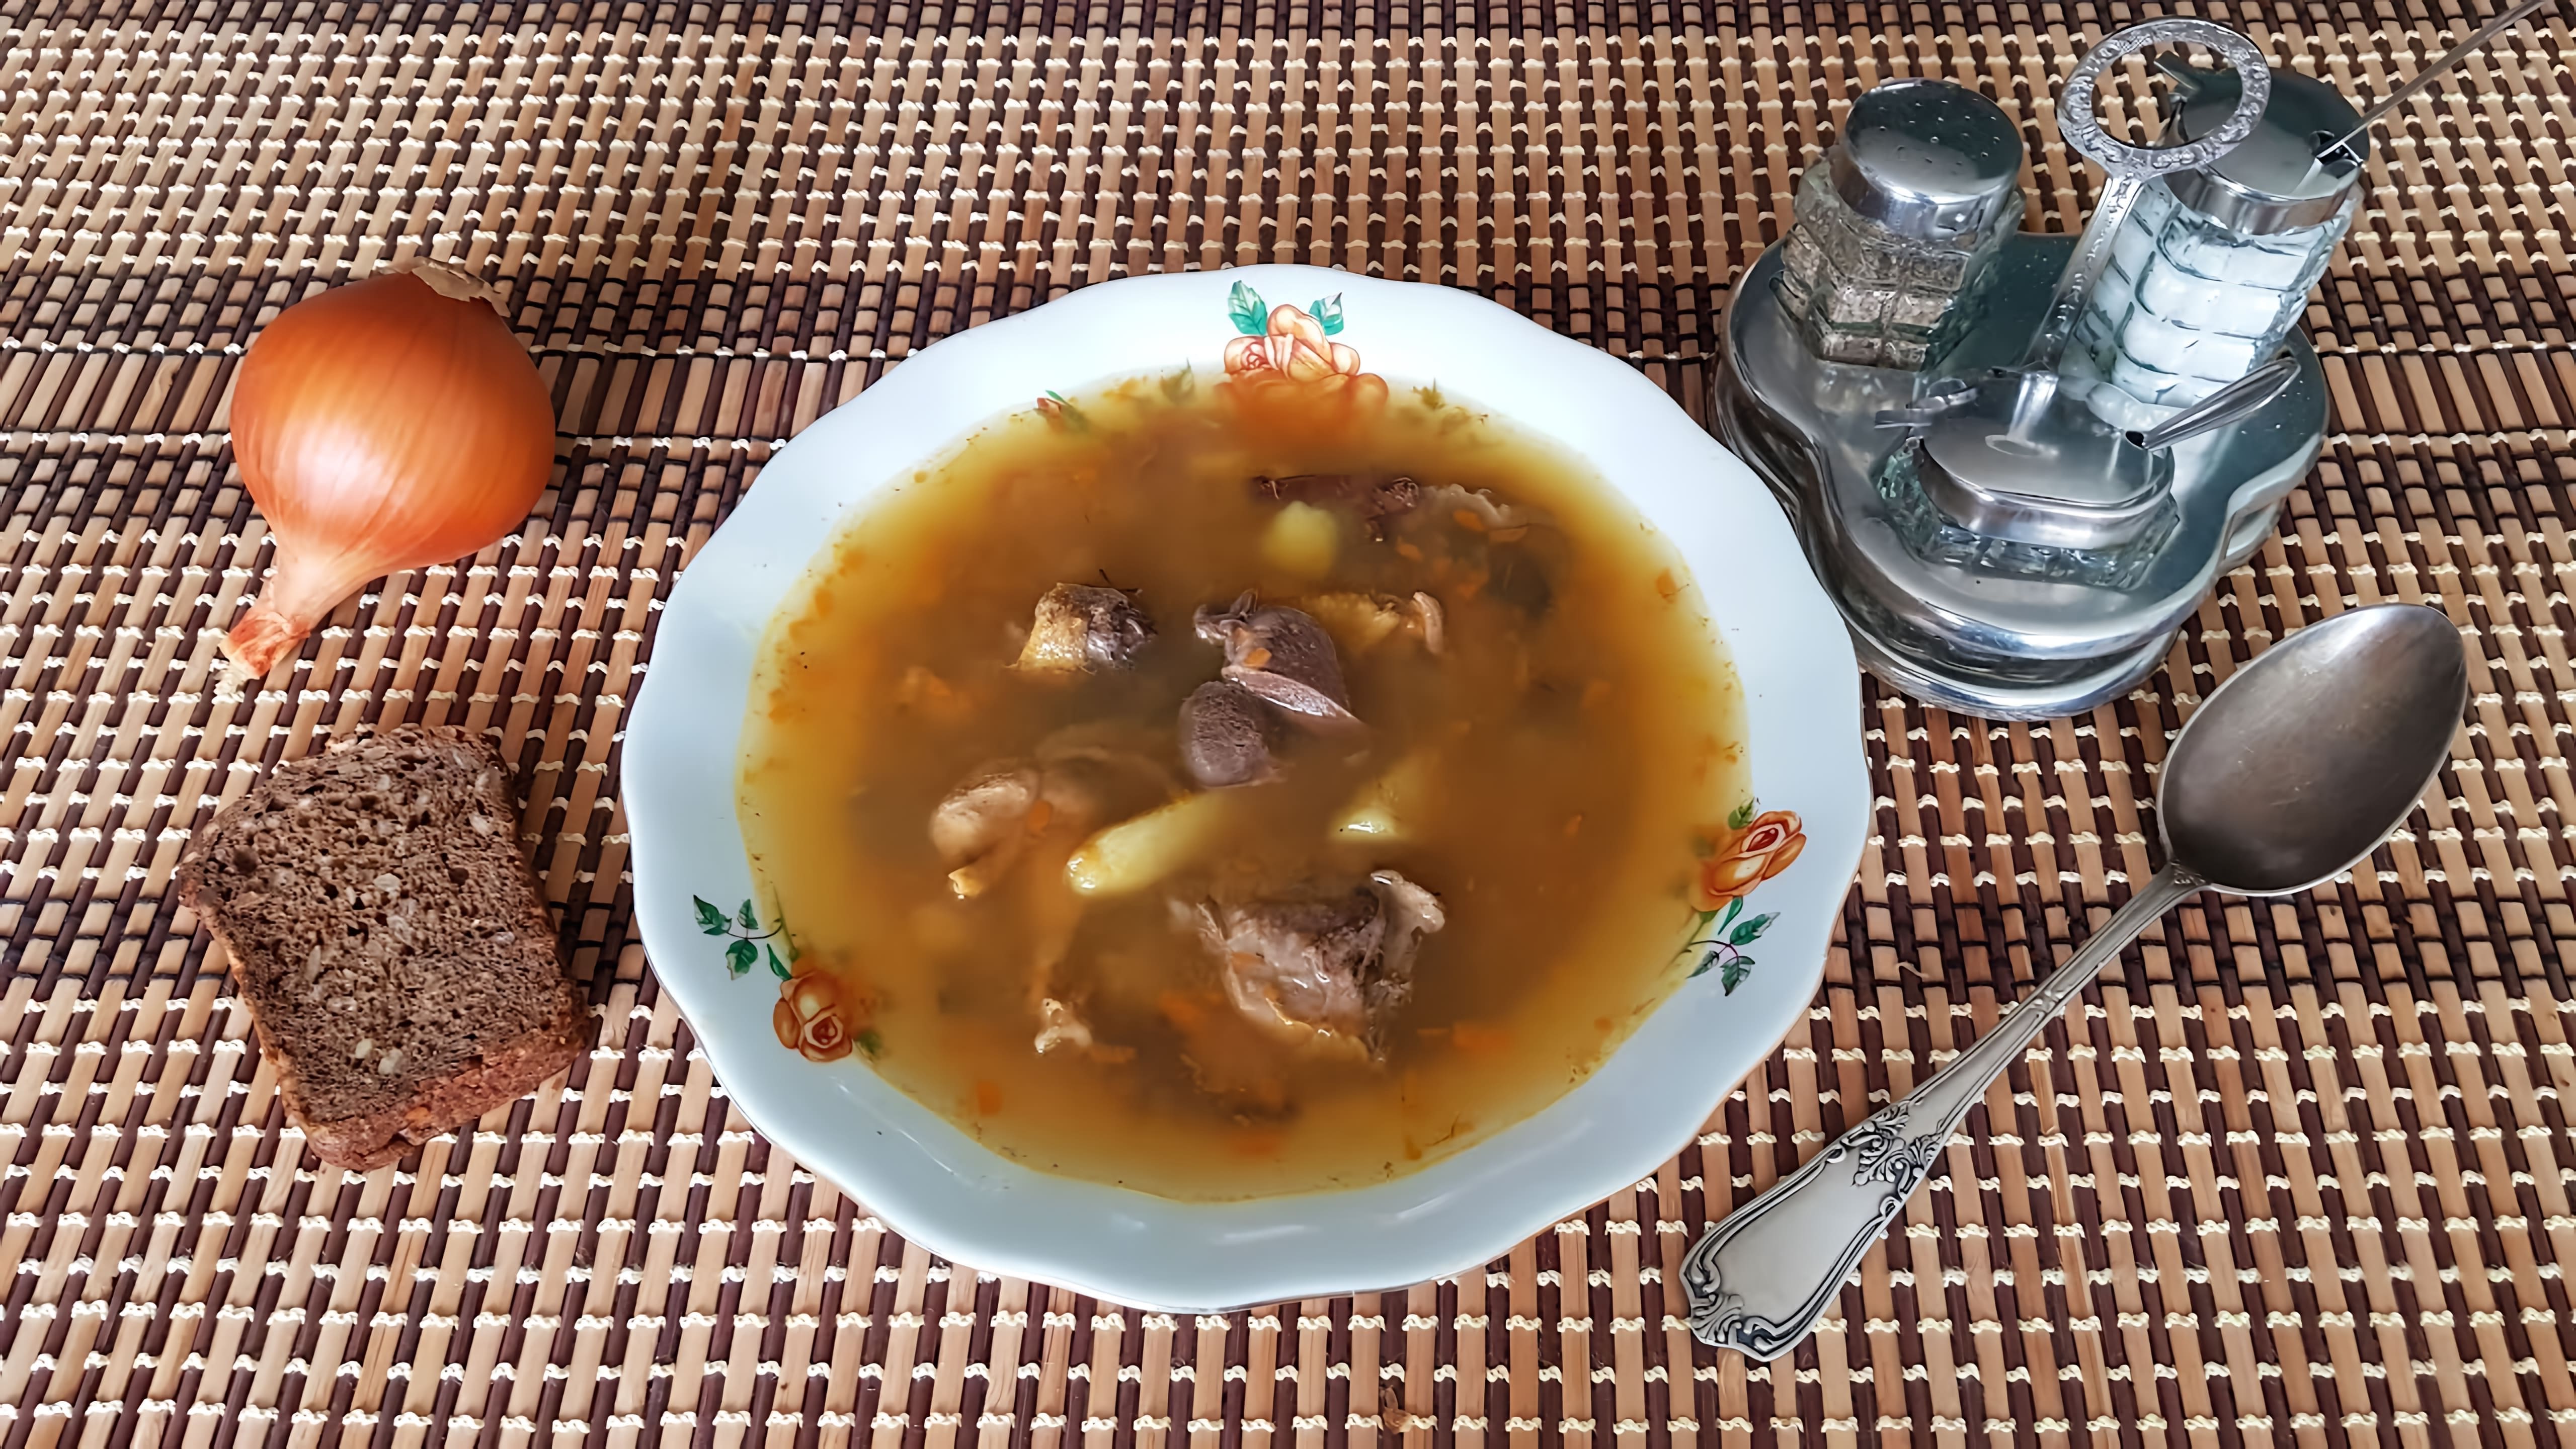 Вкуснейший, ароматный, полезный суп из фазана, всё натуральное! #АндрейРостовский #AndreyRostovskiy На развитие... 